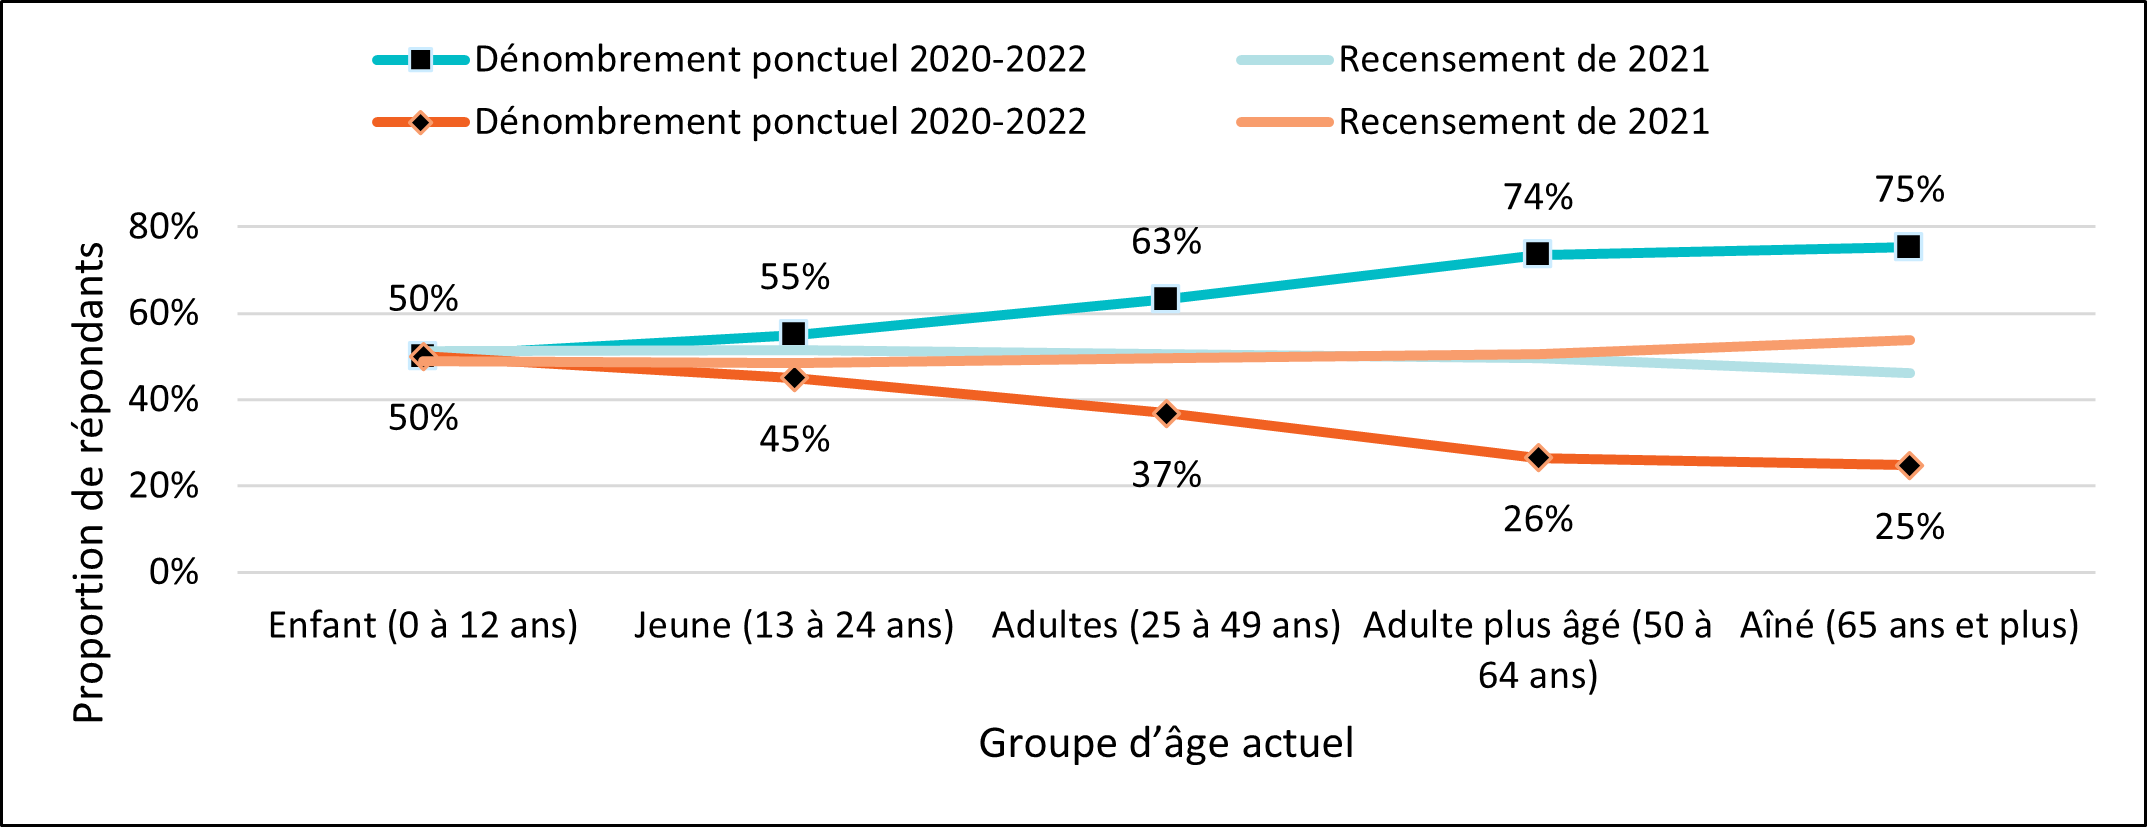 Figure 3. Recensement de 2021 comparé au dénombrement ponctuel de 2020-2022 – Répartition selon le genre et l'âge